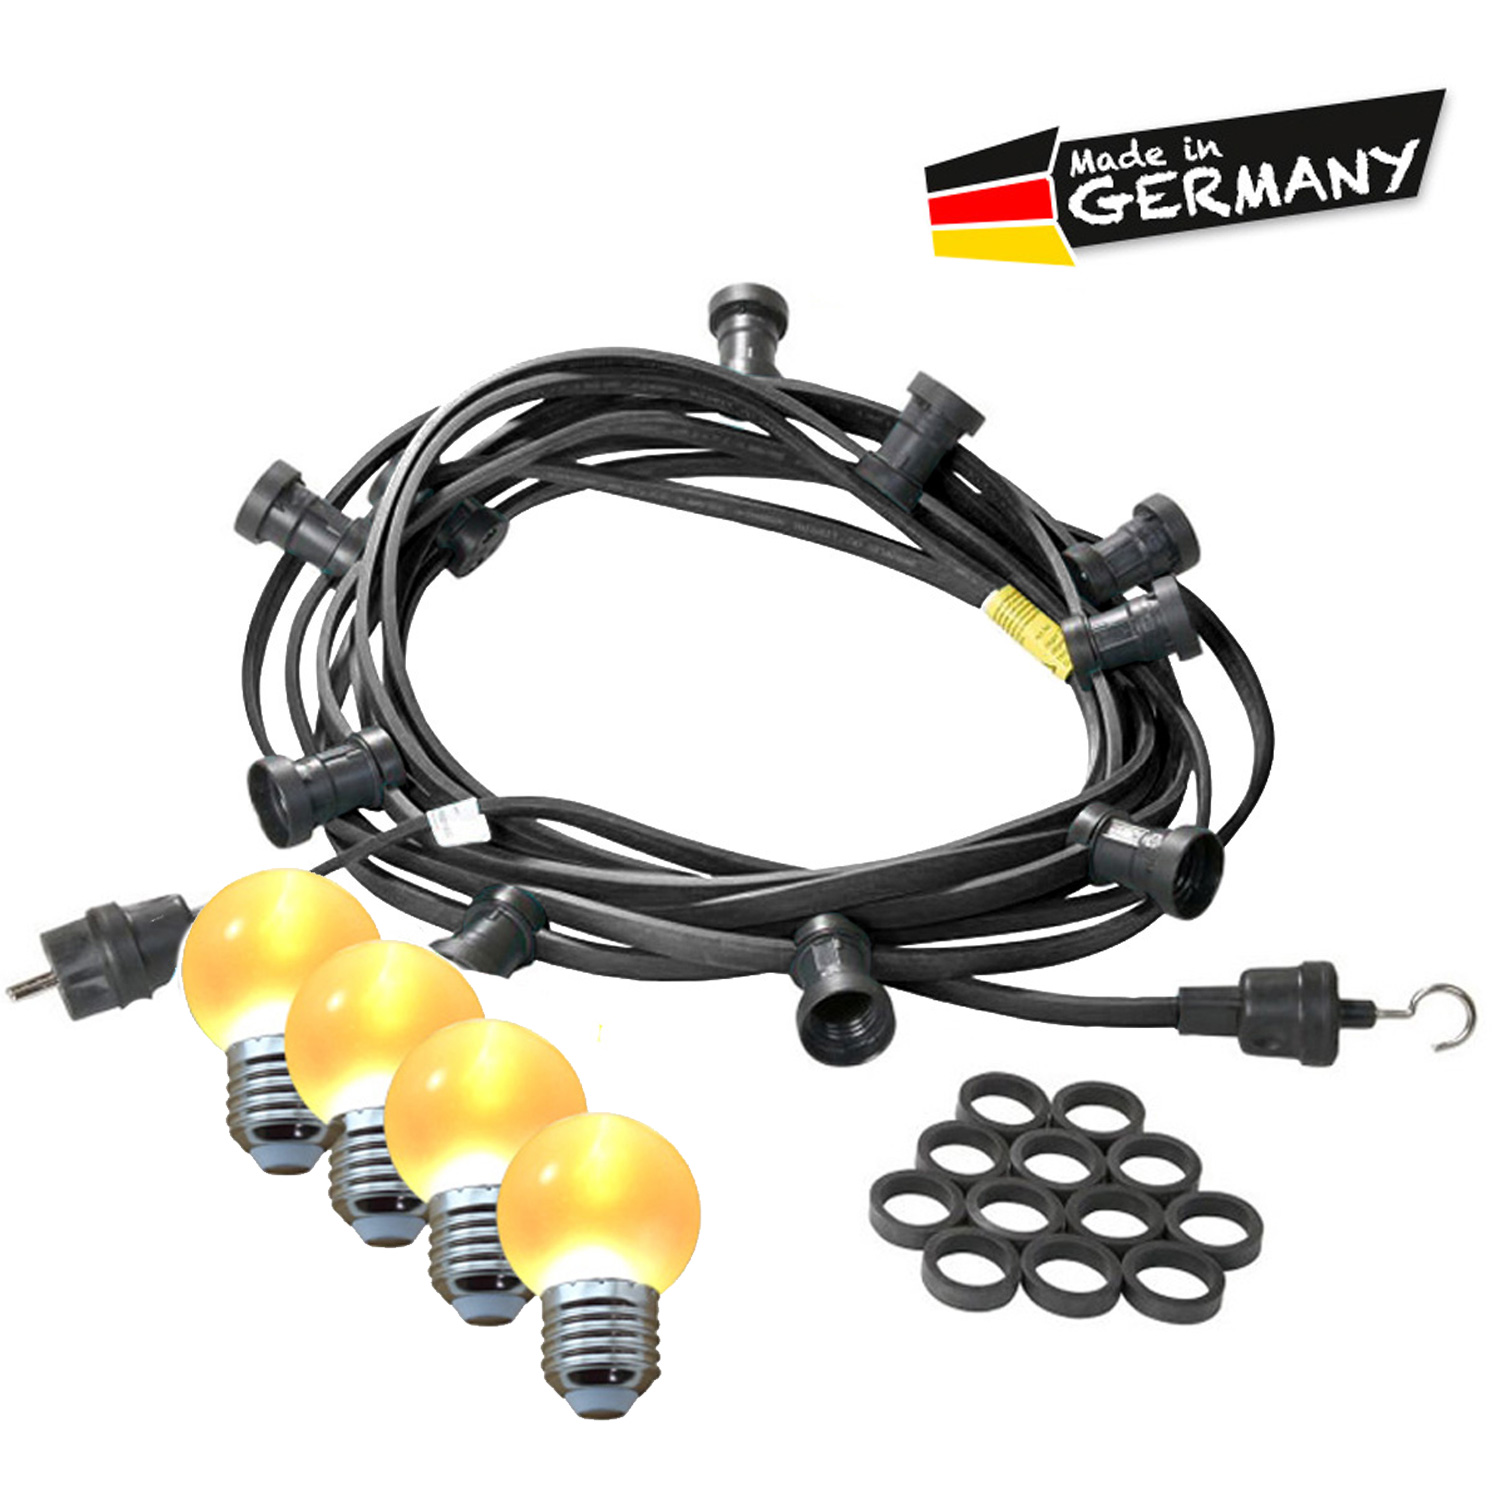 Illu-/Partylichterkette 20m - Außenlichterkette - Made in Germany - 30 x ultra-warmweiße LED Kugeln